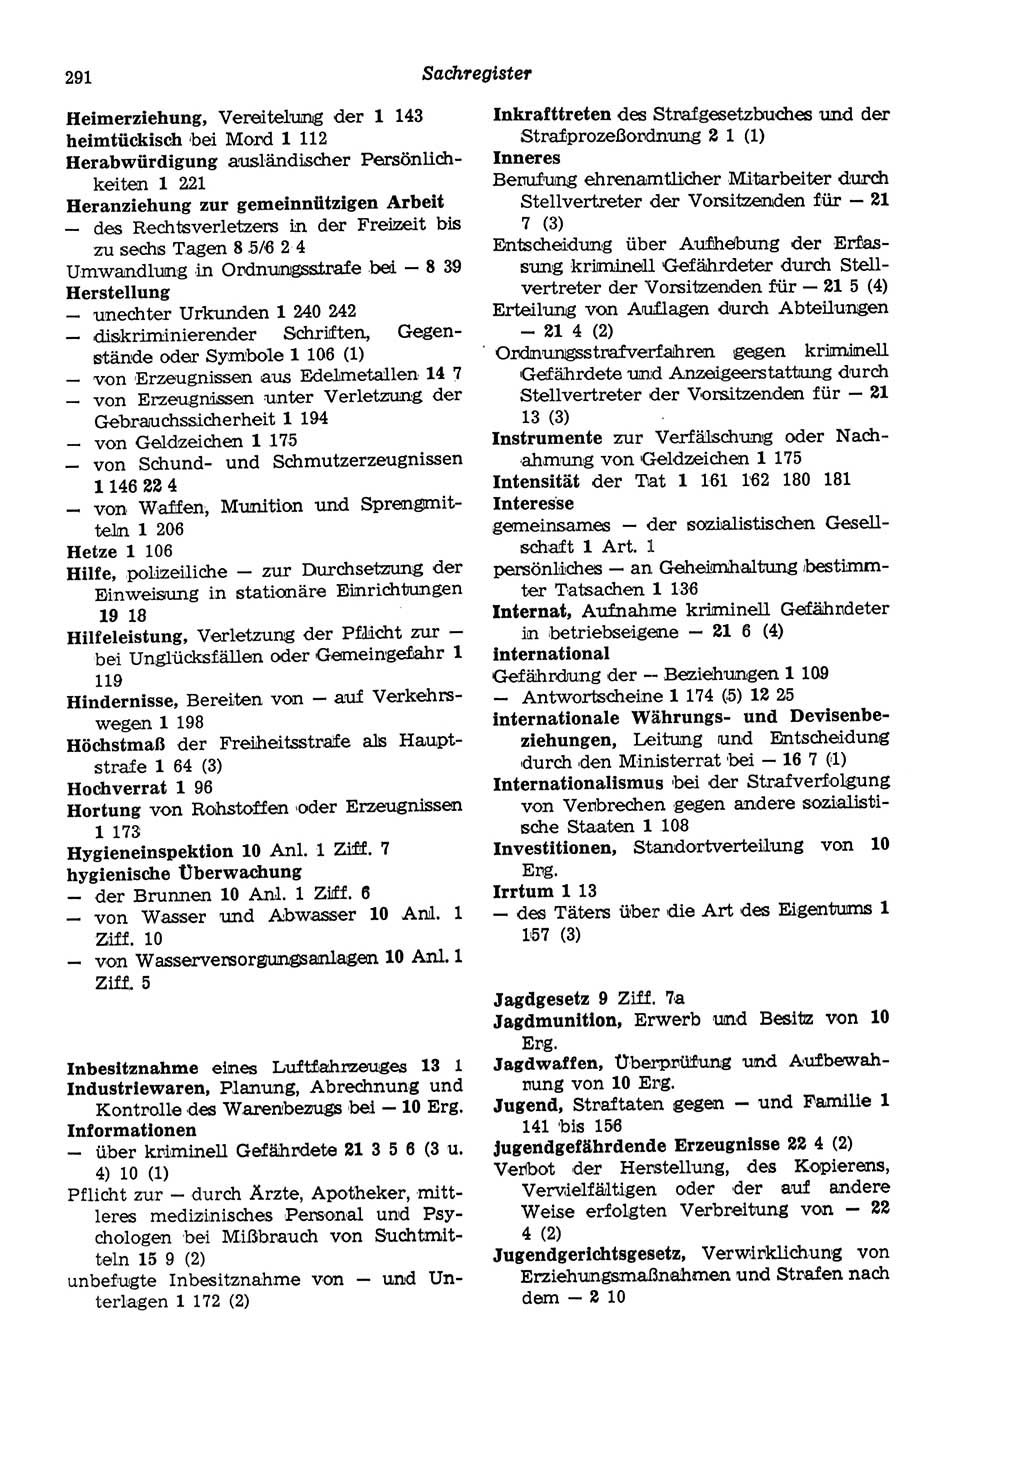 Strafgesetzbuch (StGB) der Deutschen Demokratischen Republik (DDR) und angrenzende Gesetze und Bestimmungen 1975, Seite 291 (StGB DDR Ges. Best. 1975, S. 291)